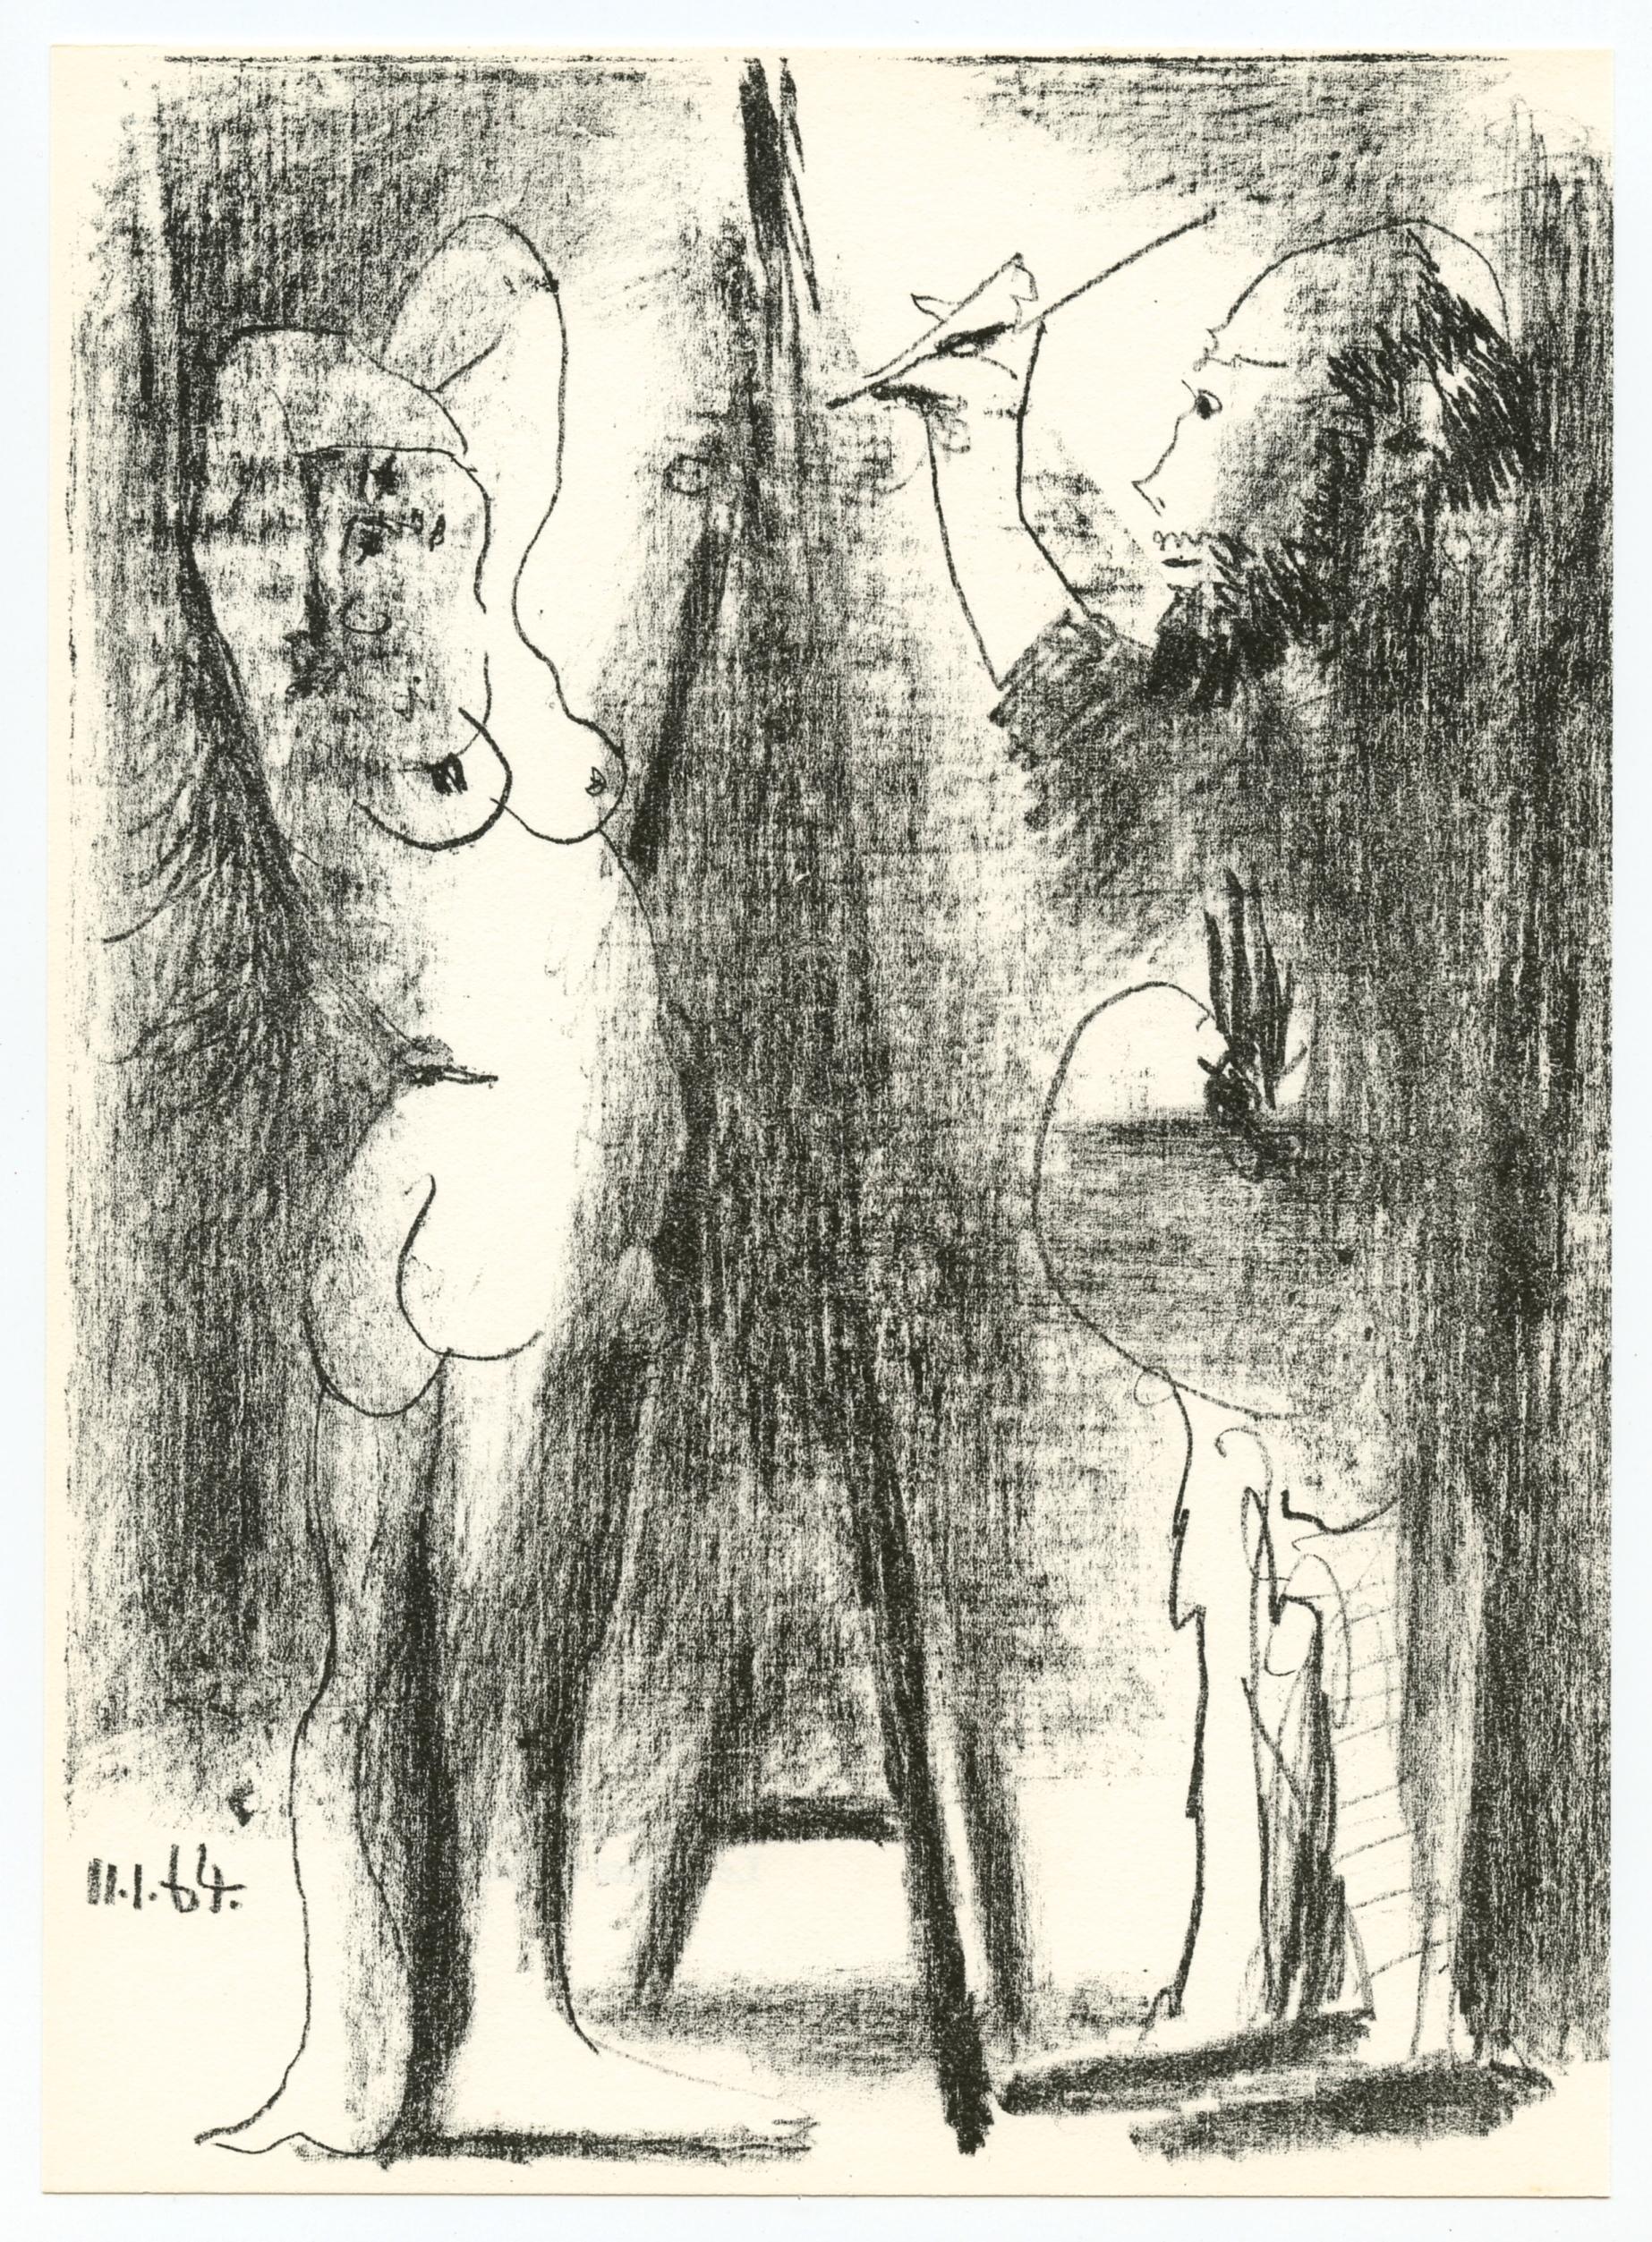 Pablo Picasso Nude Print - "Le peintre et son modele" original lithograph